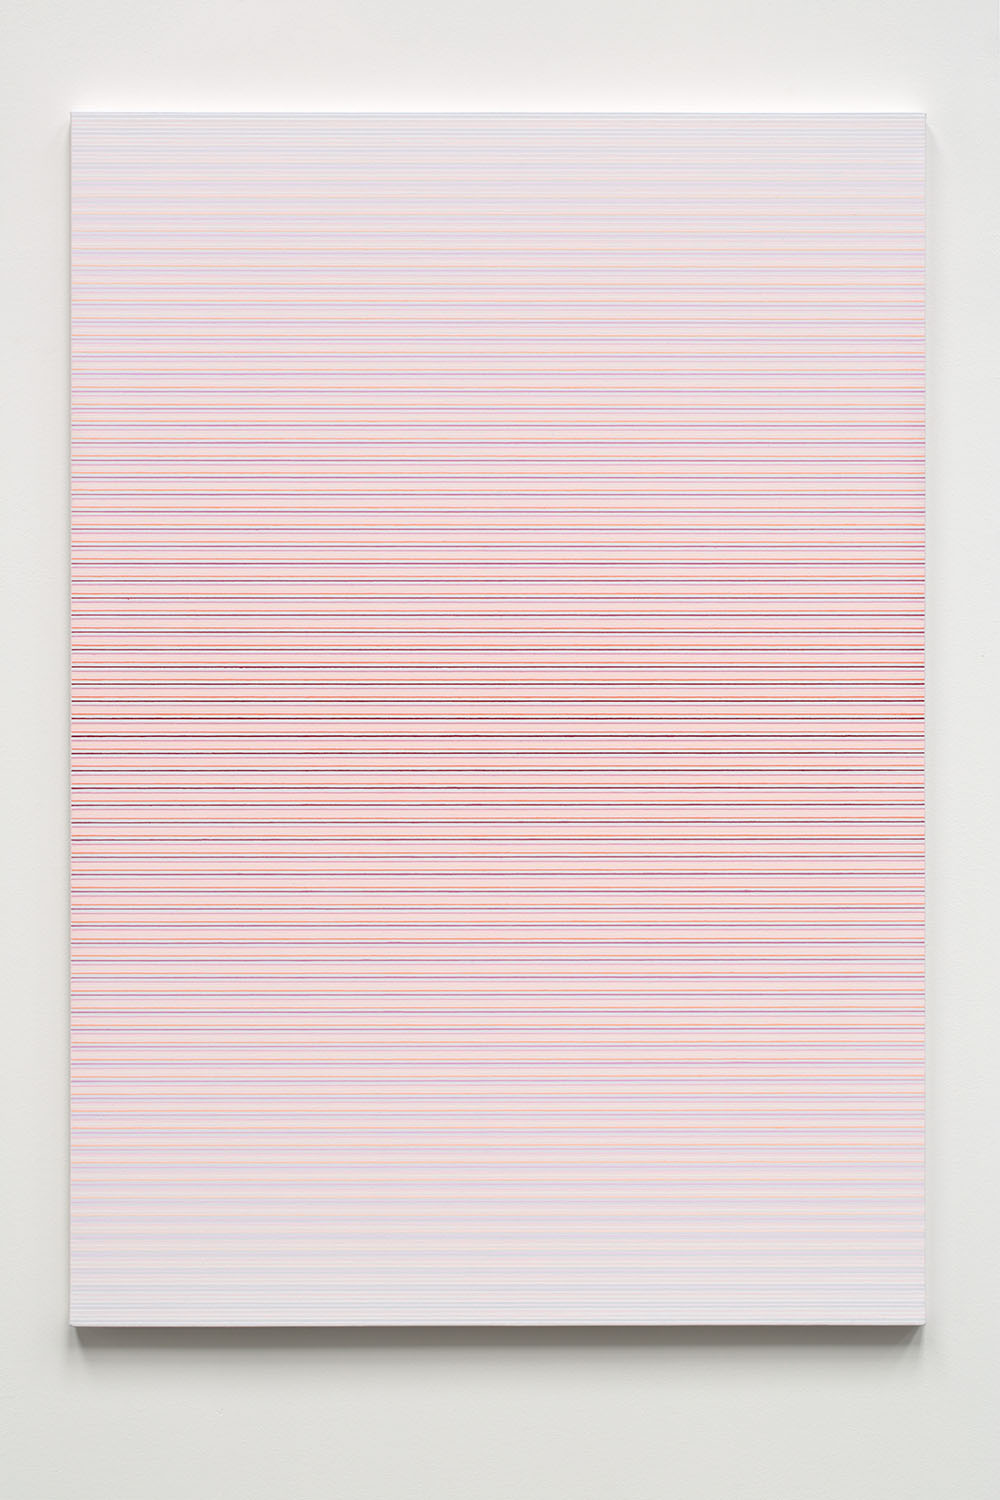  Jiří Matějů,  Six Stations  (polyptych), 2015, pigments and mixed media on canvas, 141 x 99 cm 